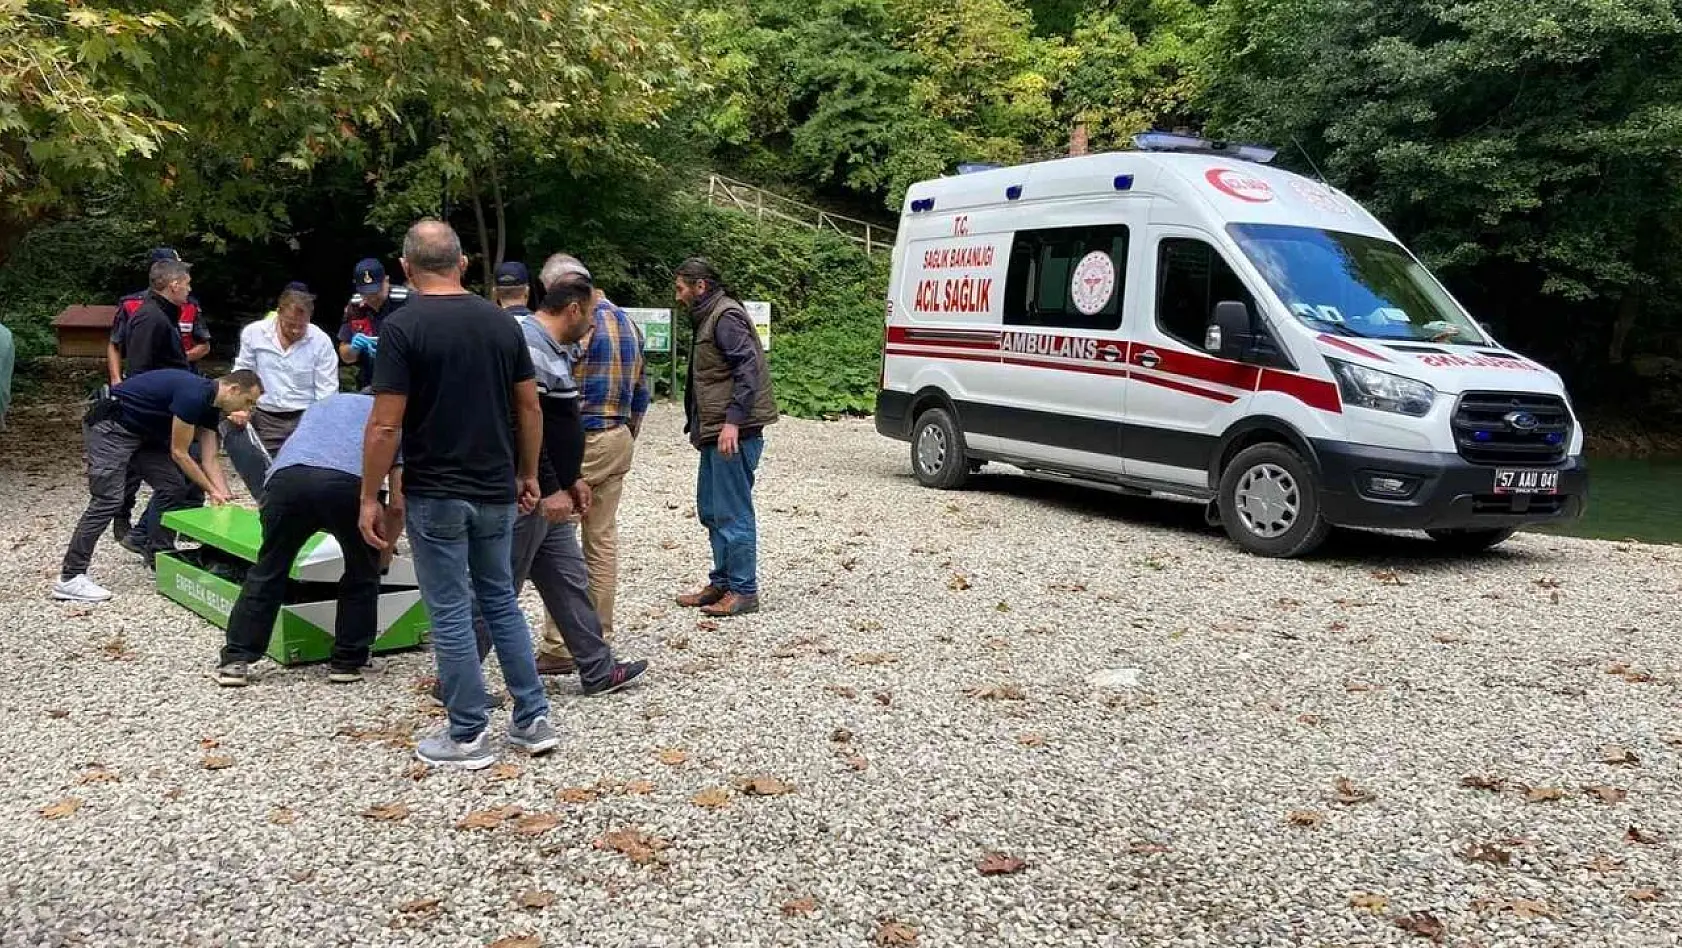 Denizli'den Sinop'a gezmeye giden ailenin üzerine ağaç devrildi: 2 ölü, 1 yaralı